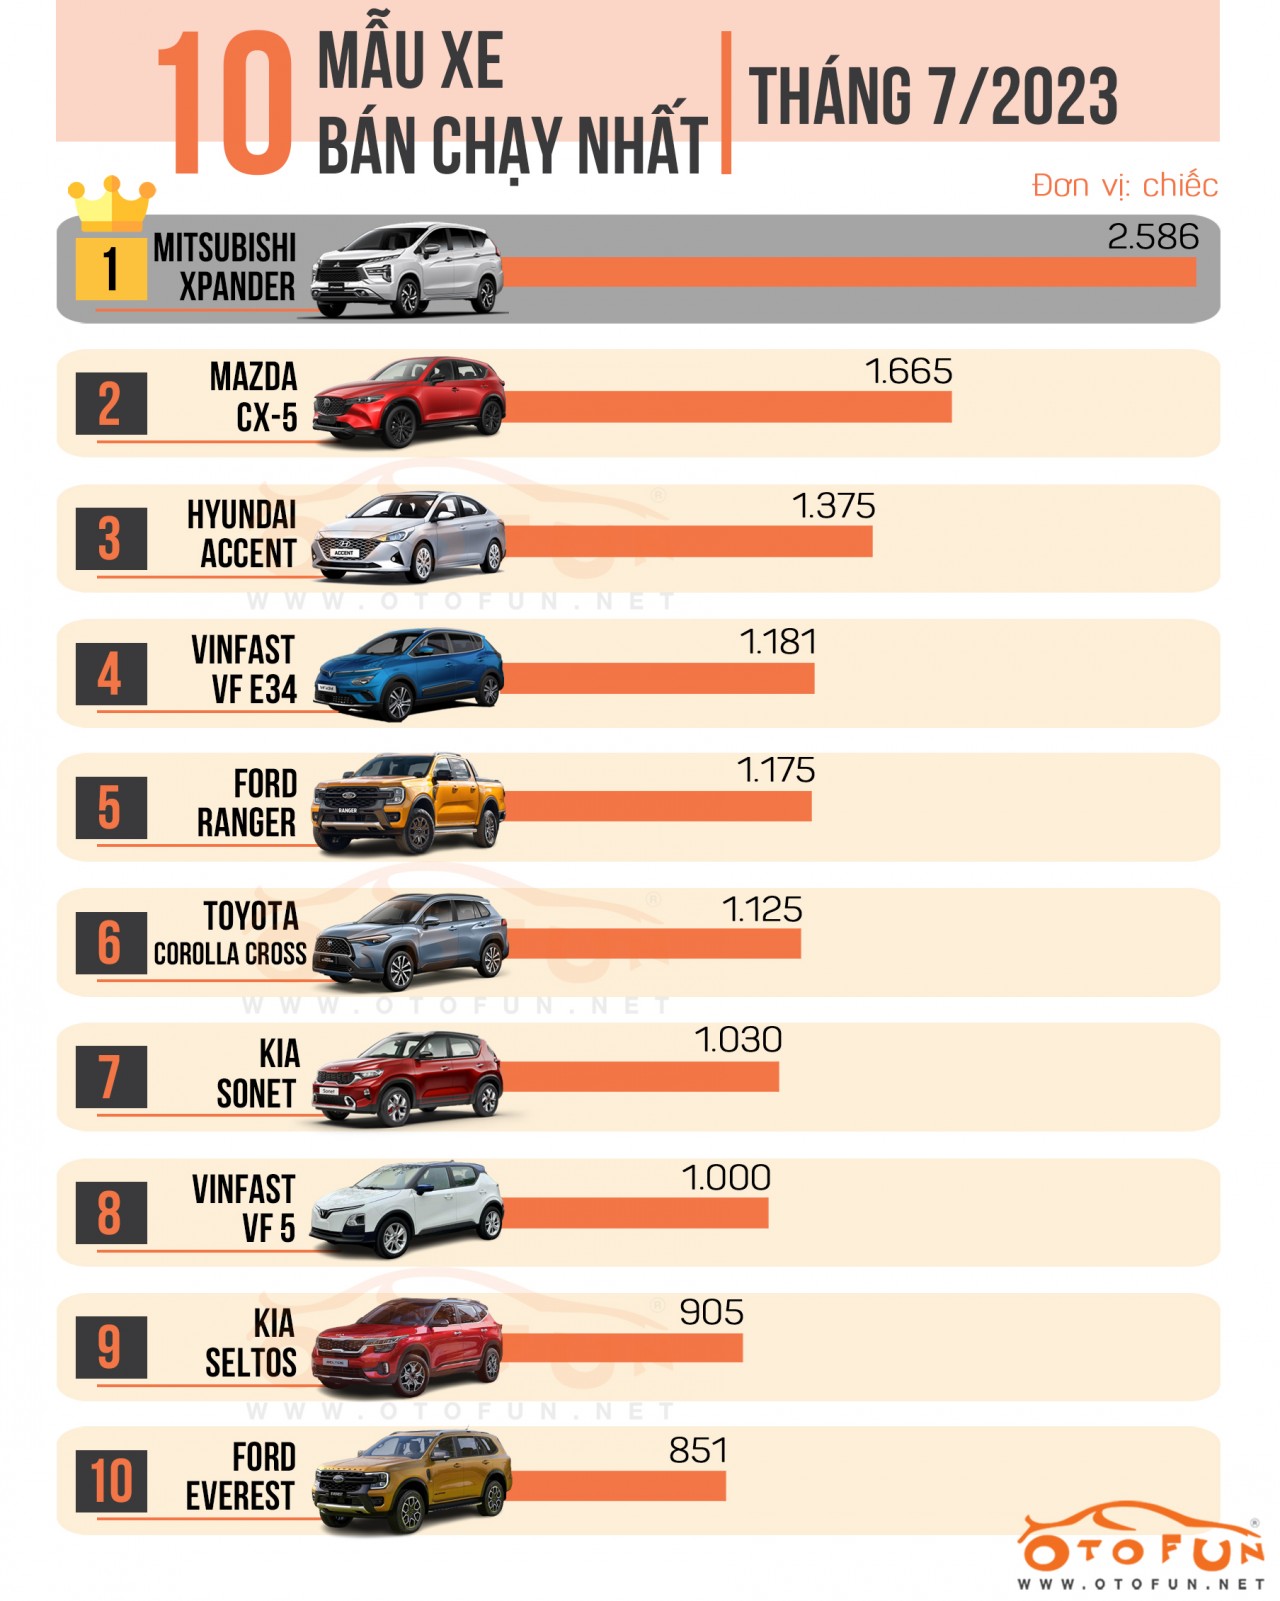 [Infographic] 10 xe bán chạy nhất tháng 7/2023